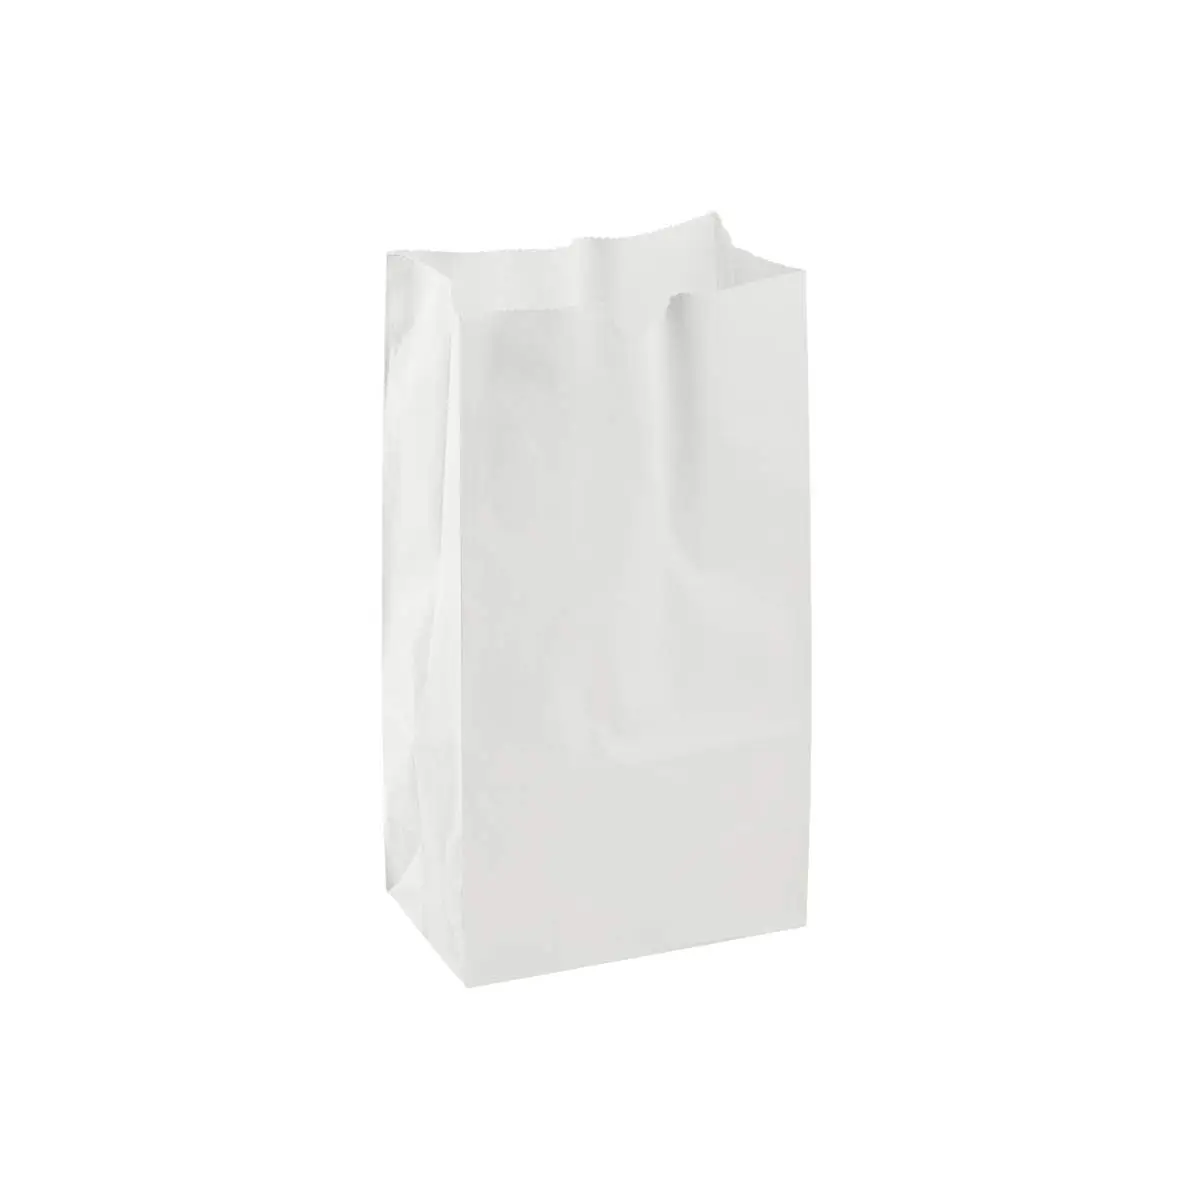 

Perfect Bolsas de papel blanco Kraft de 4 libras, paquete de 50 unidades (bolsa blanca Kraft 4 lb-50 CT), color blanco.